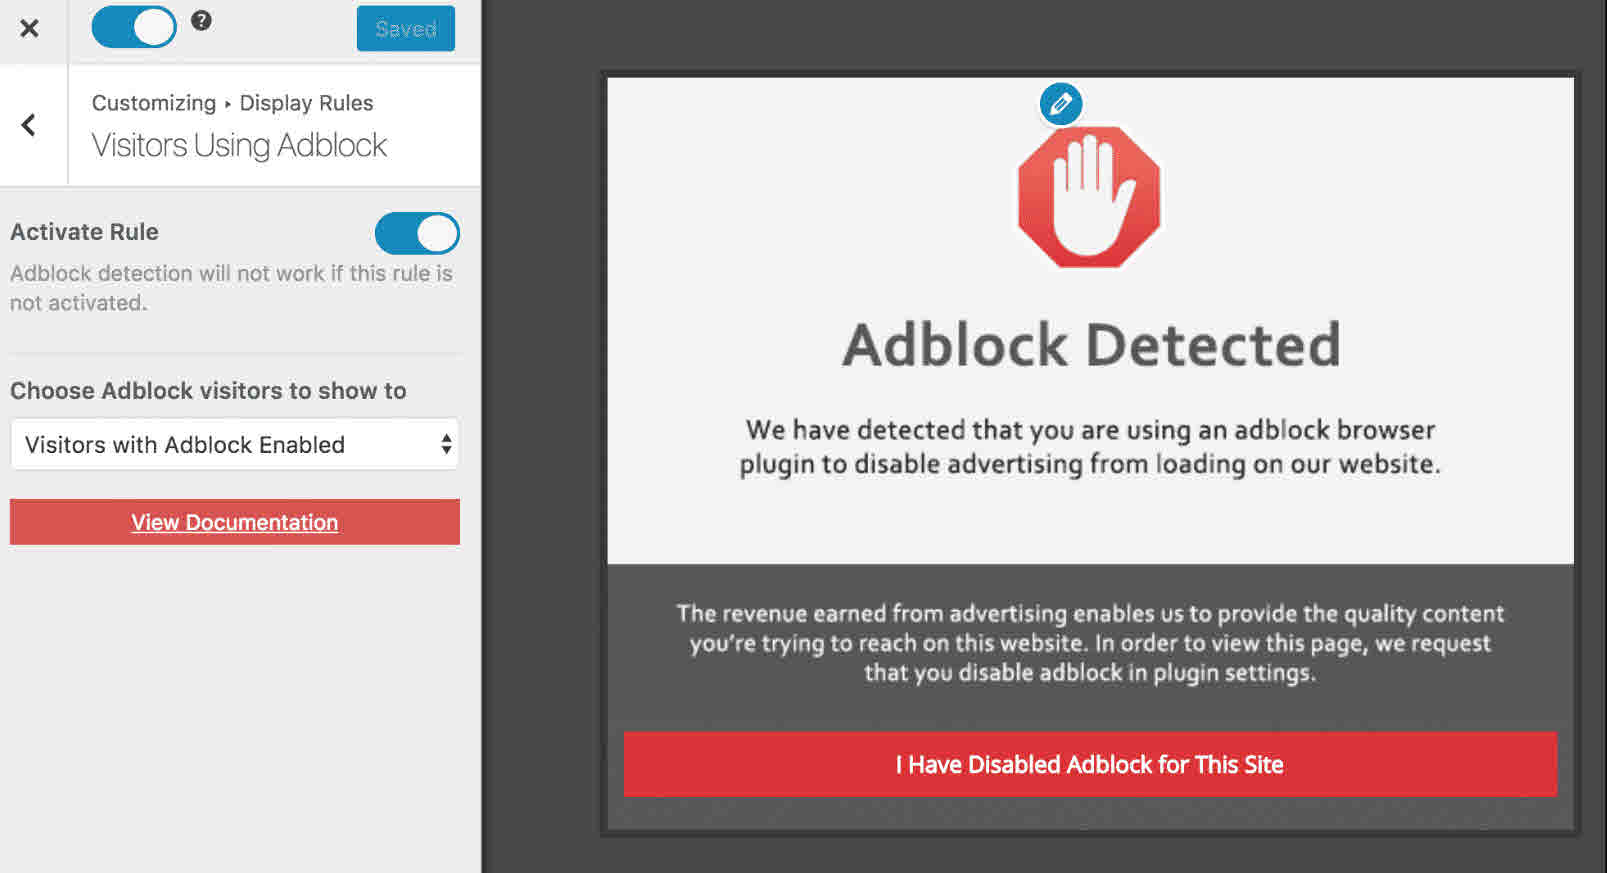 I migliori AdBlock Detection per WordPress